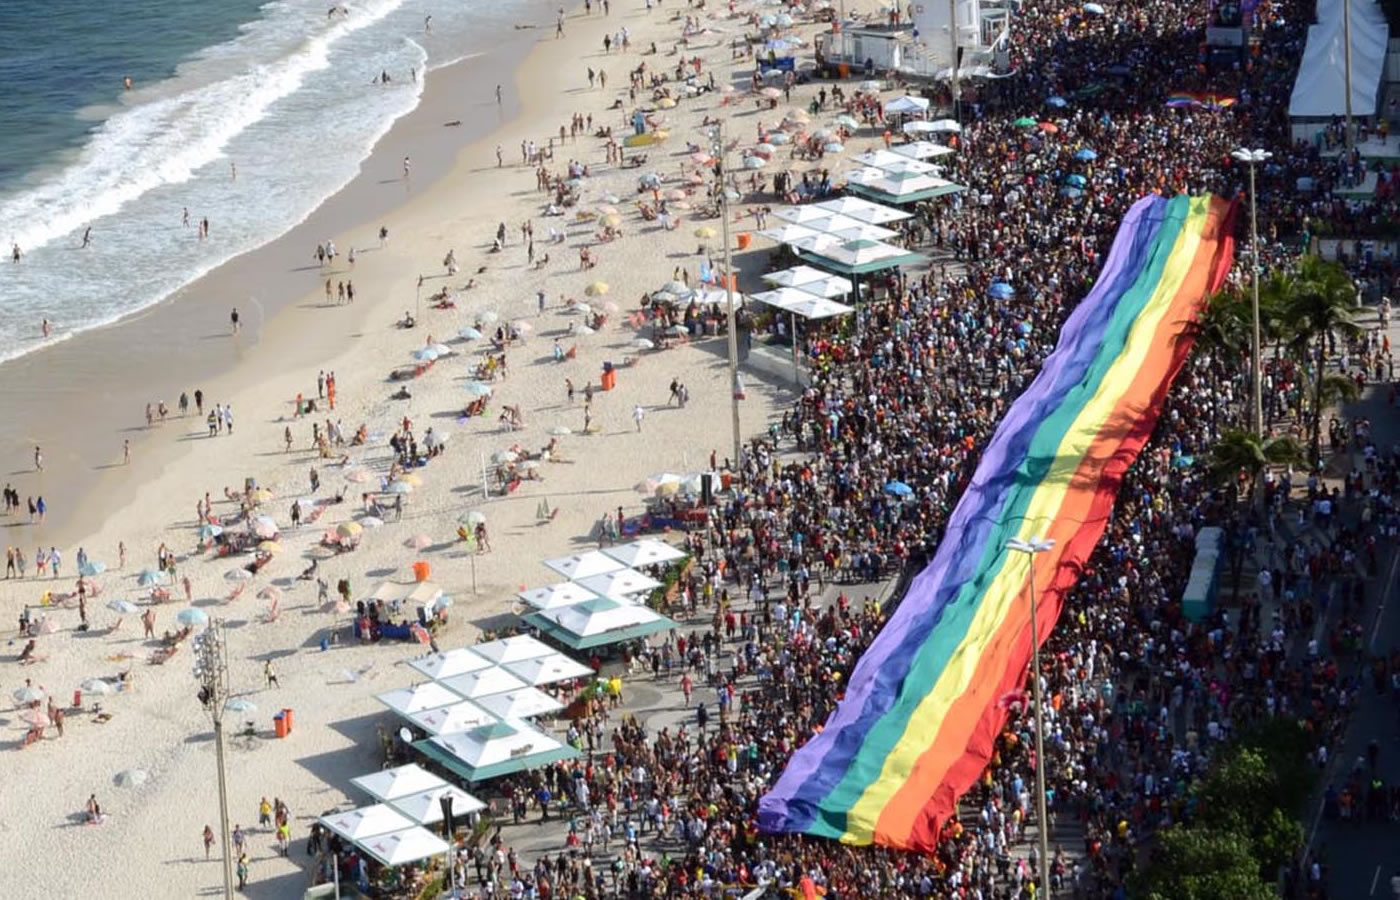 21ª Parada LGBT do Rio 2016 será realizada em dezembro, em Copacabana